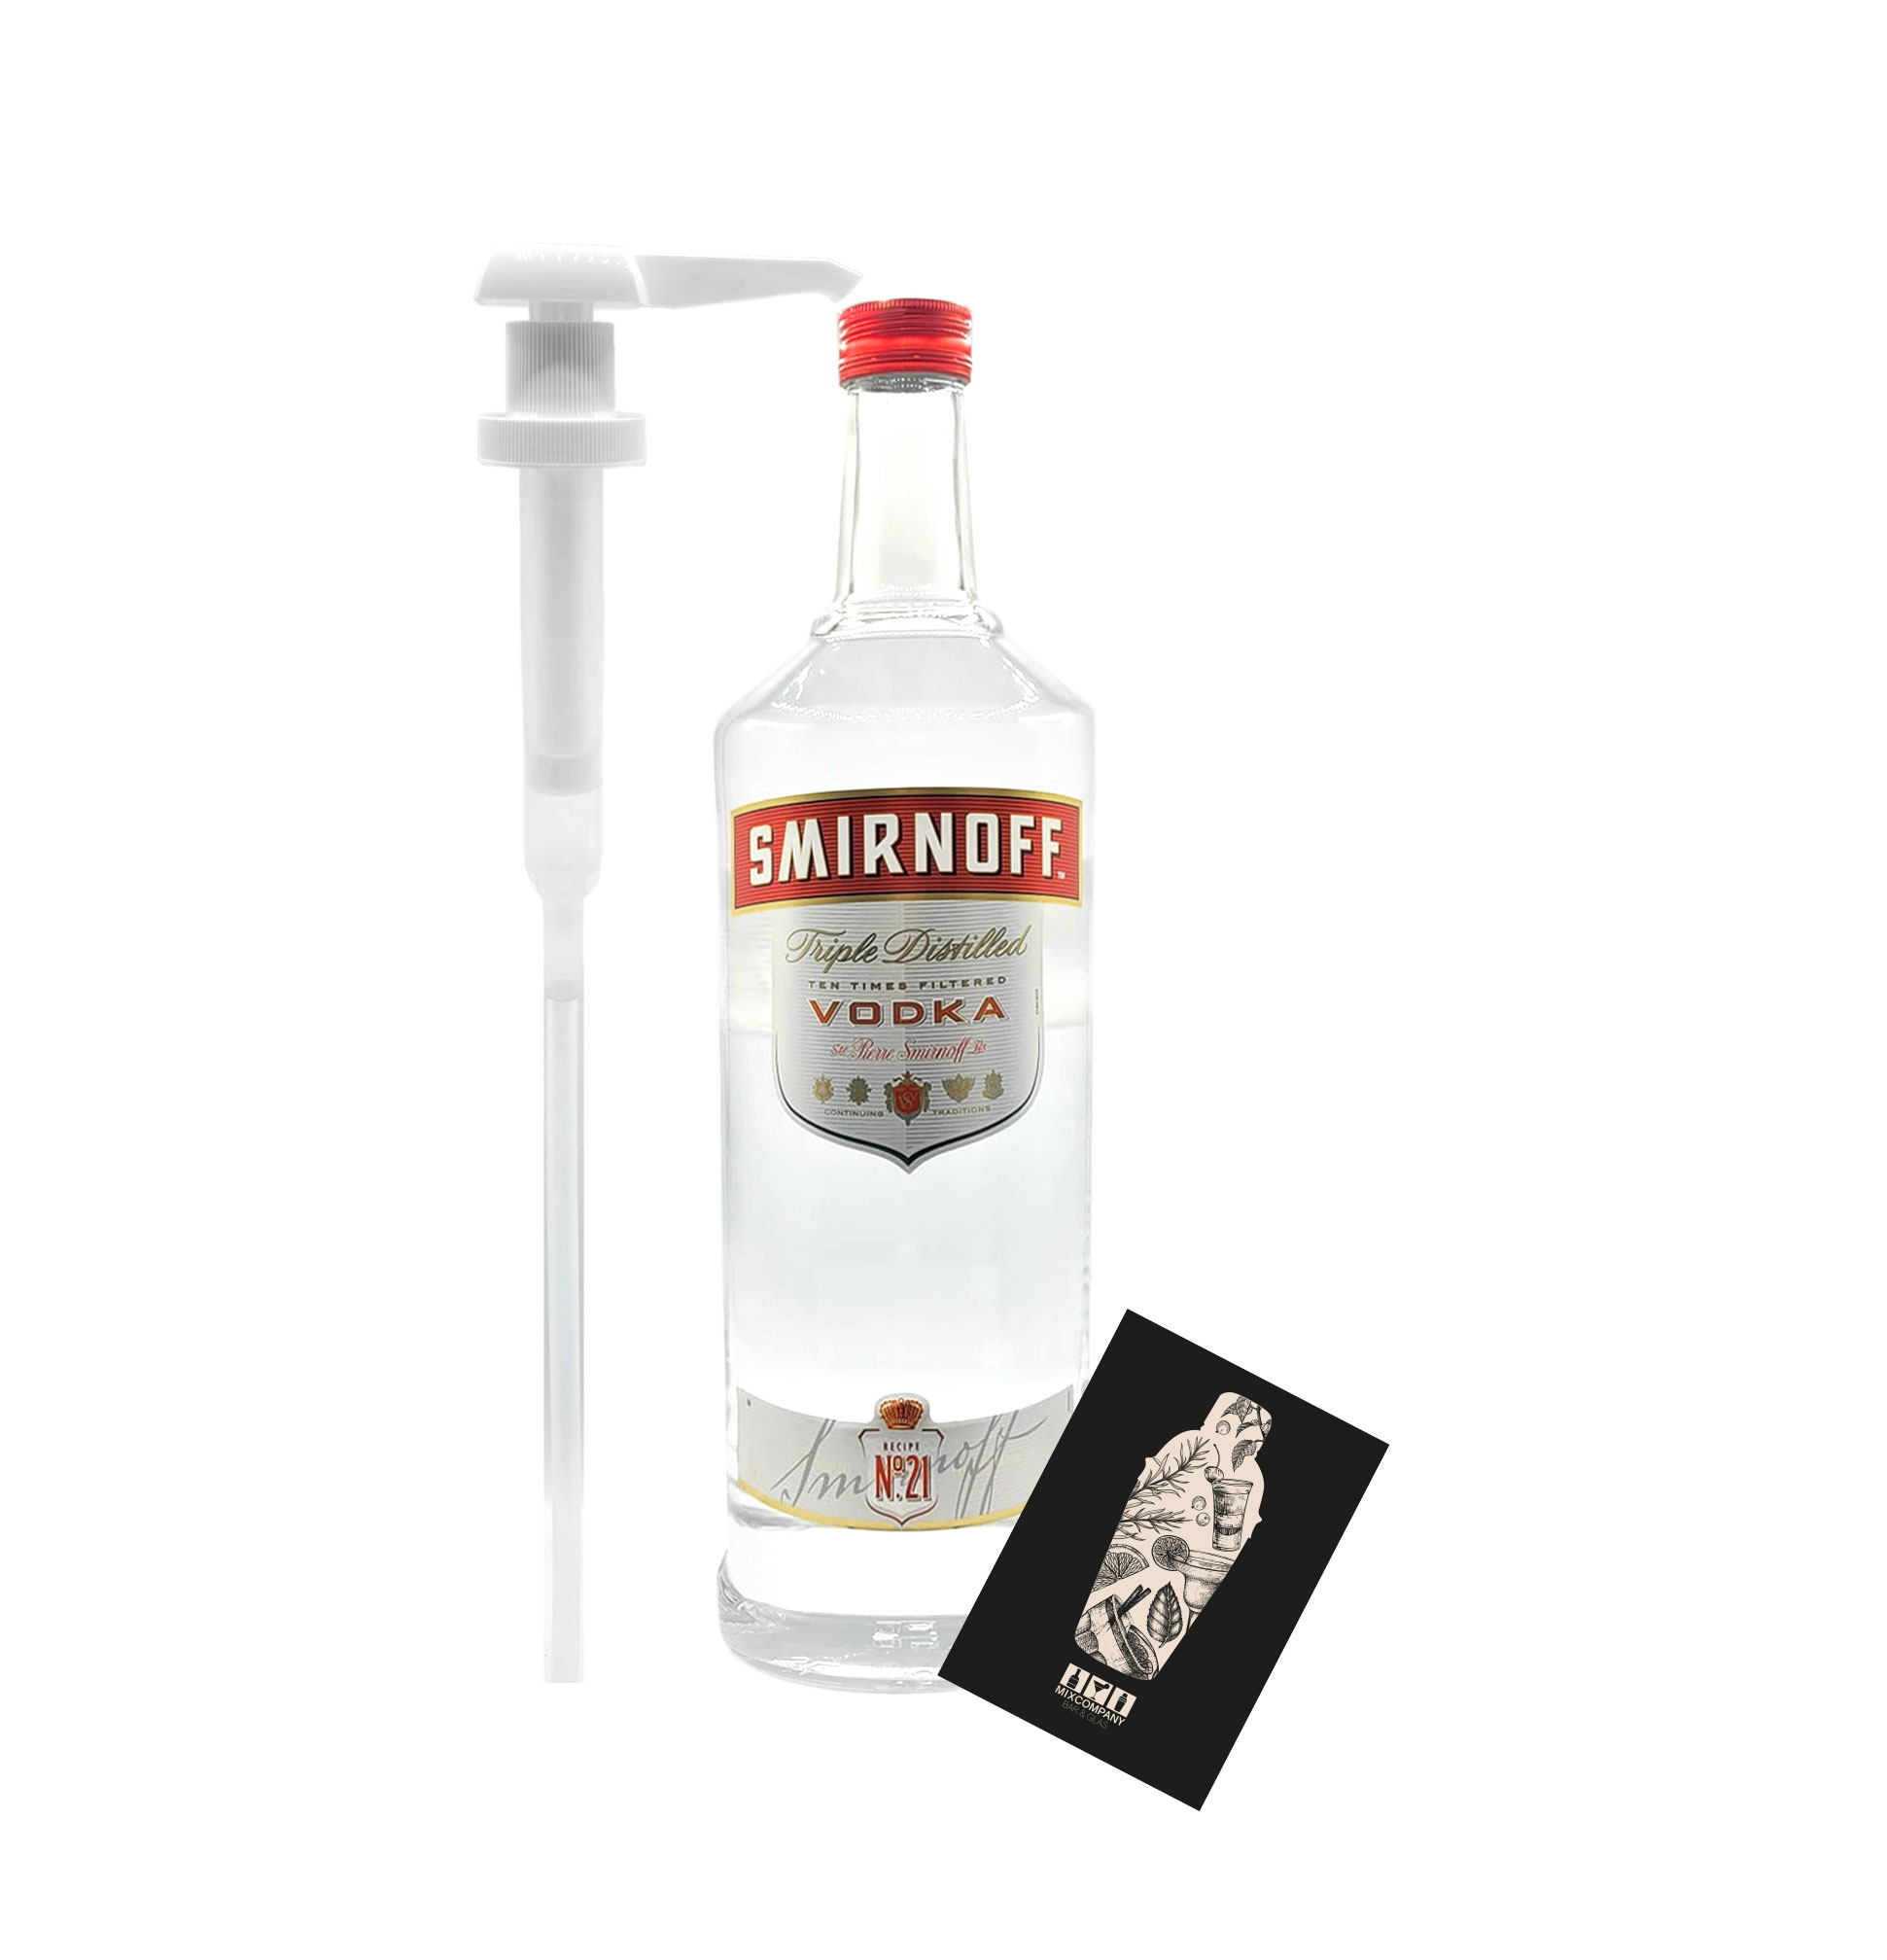 Smirnoff Vodka Magnum 3L (37,5% Vol) mit Smirnoff Pumpe Triple Distilled Wodka 3000ml Magnum Flasche XXL- [Enthält Sulfite]